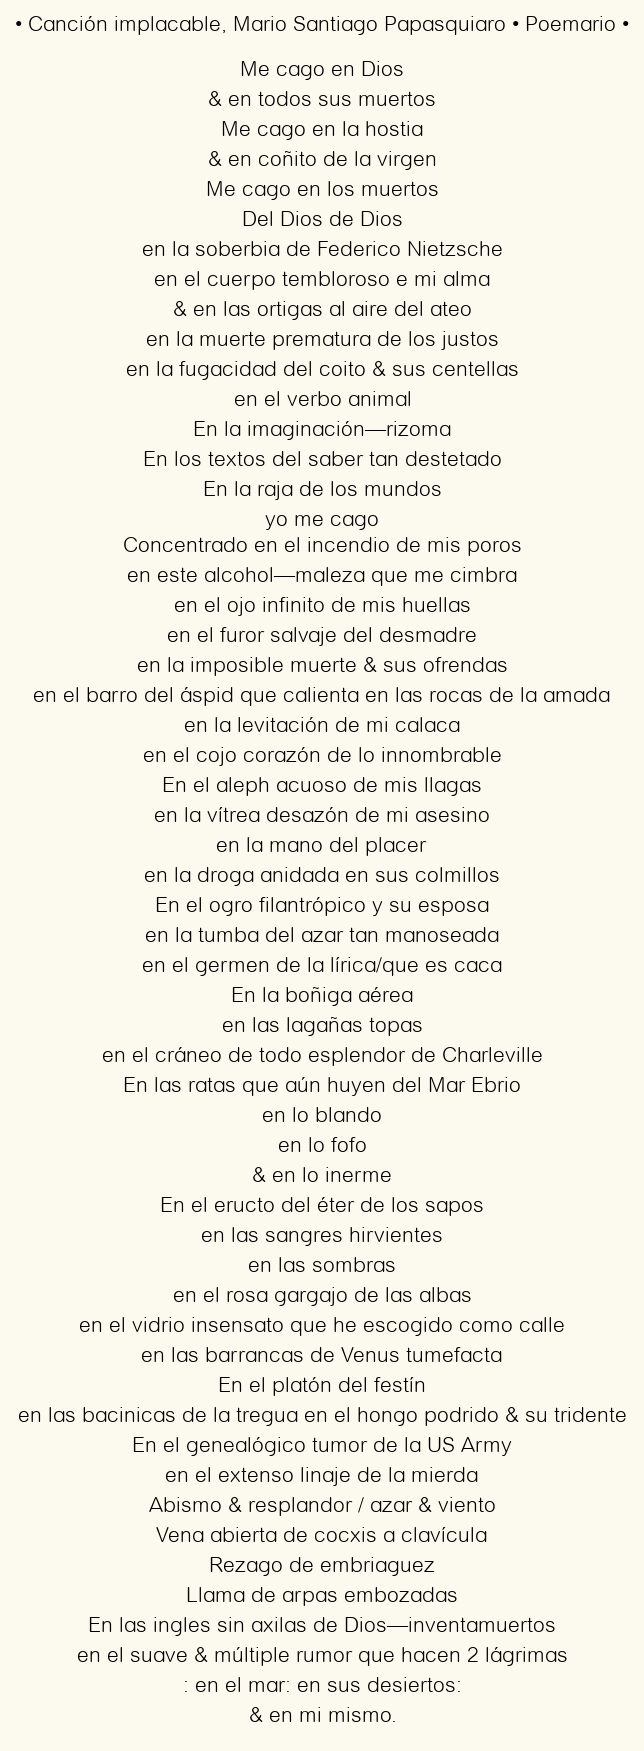 Imagen con el poema Canción implacable, por Mario Santiago Papasquiaro